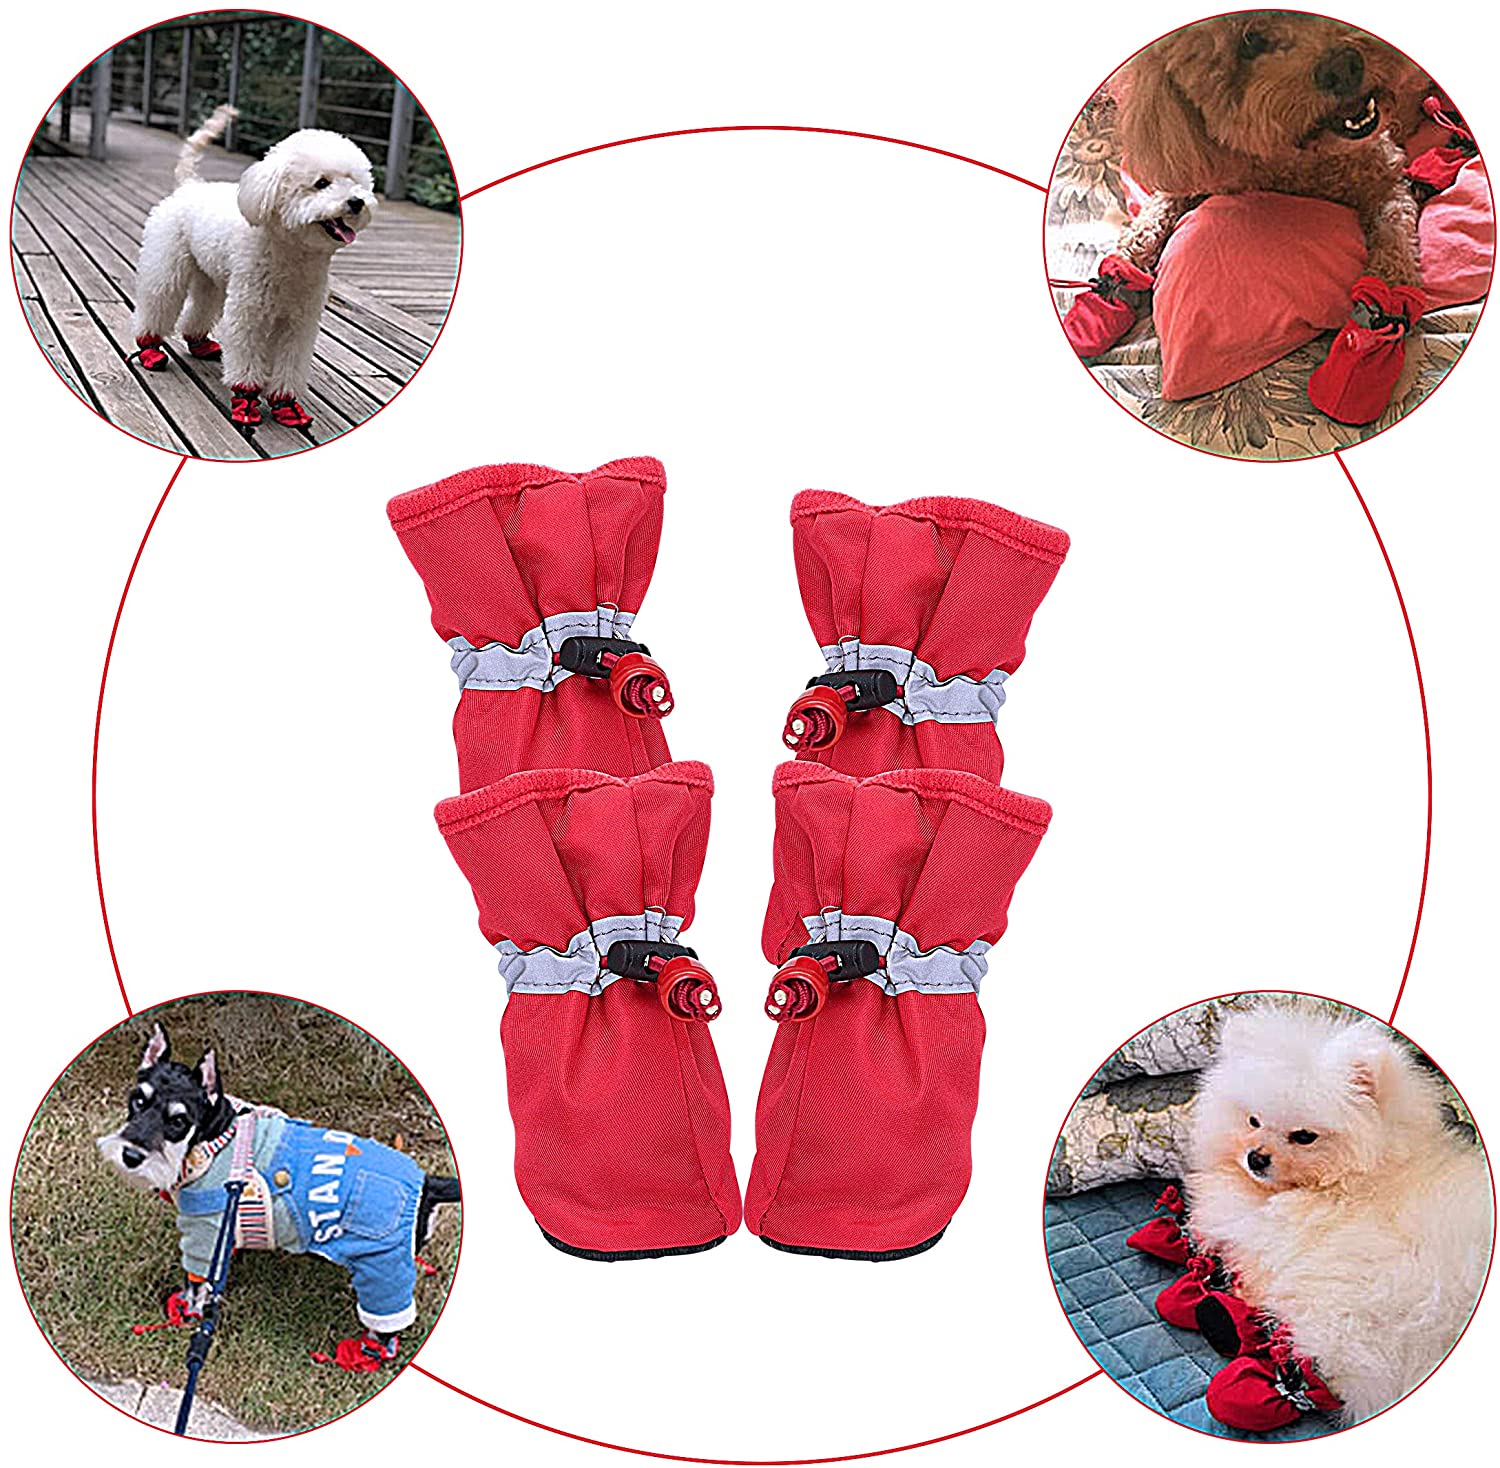  YAODHAOD Protector de Pata de Botas para Perros, Zapatos para Perros Antideslizantes, Estos Cómodos Zapatos Suave Tienen Correas Reflectantes, para Perros Pequeños (6, Rojo) 